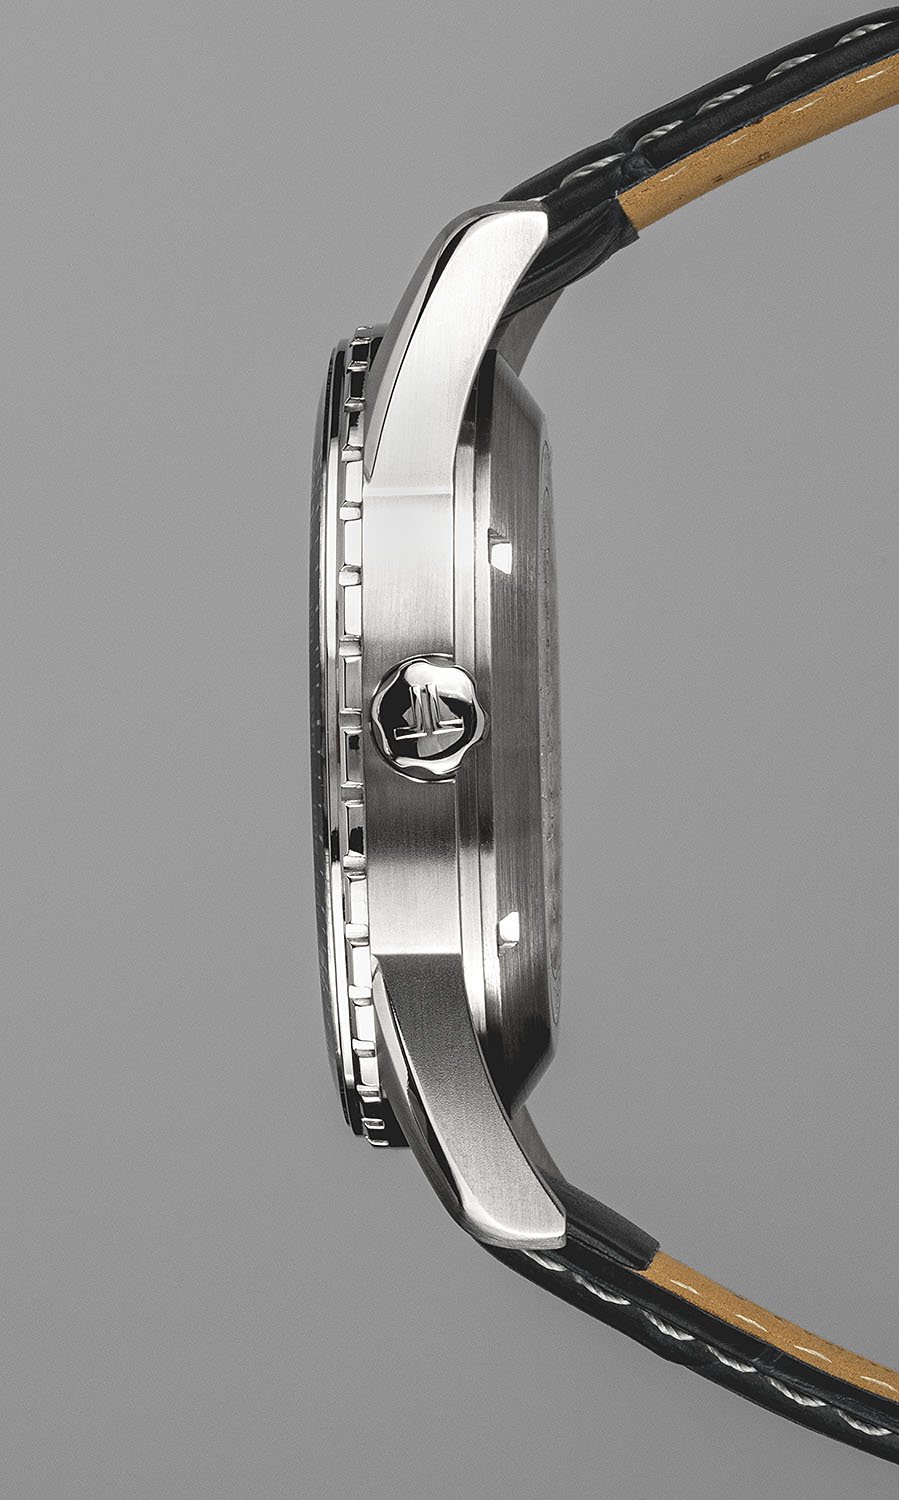 1-2075B, наручные часы Jacques Lemans